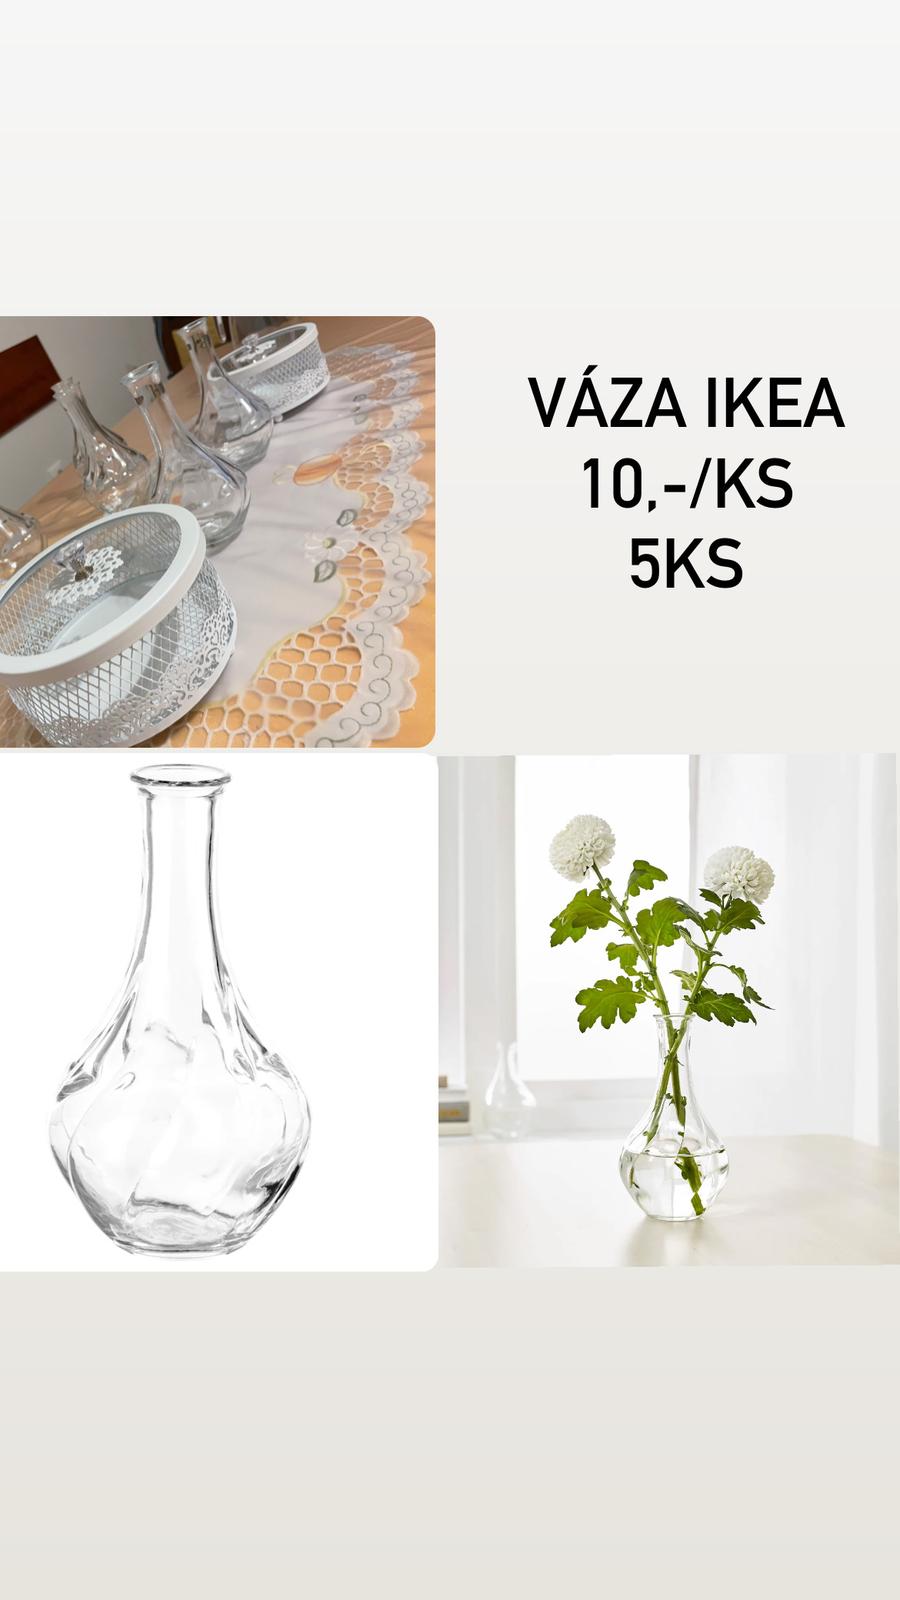 Váza ikea 5ks - Obrázek č. 1